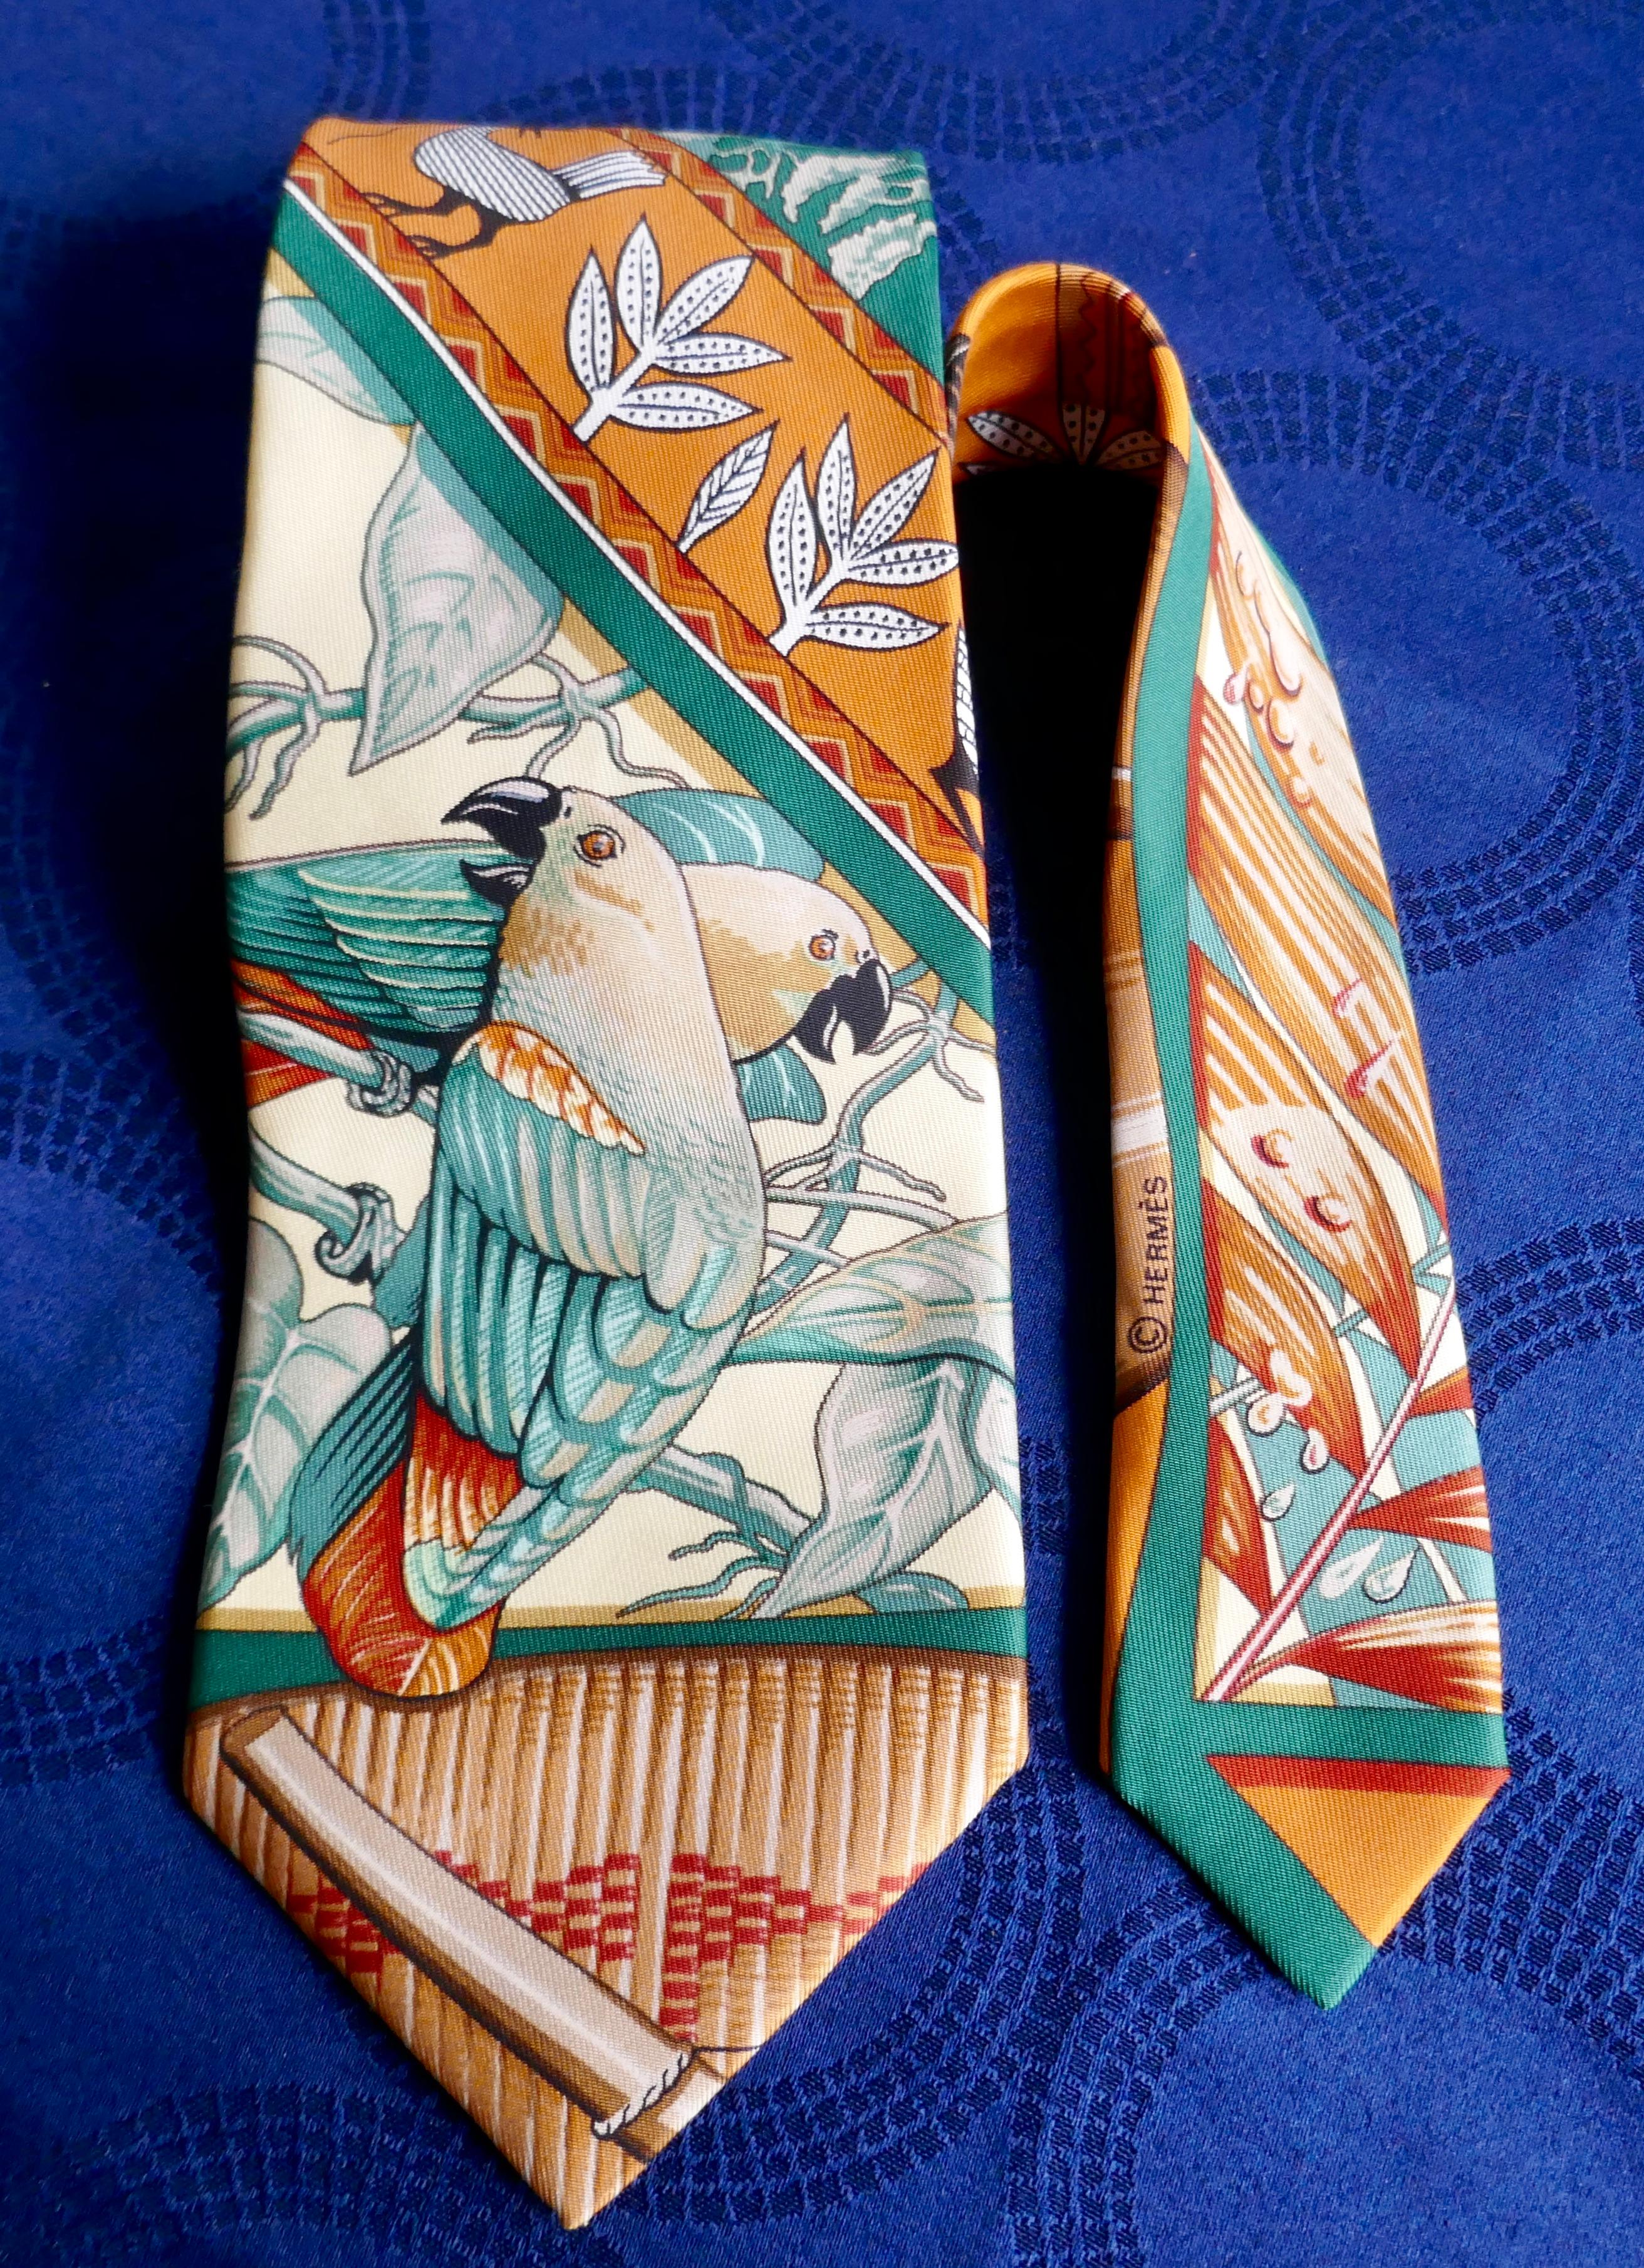 Magnifique cravate Hermès en soie orange « Birds Parrots in the Jungle » (oiseaux perroquets dans la jungle), 2